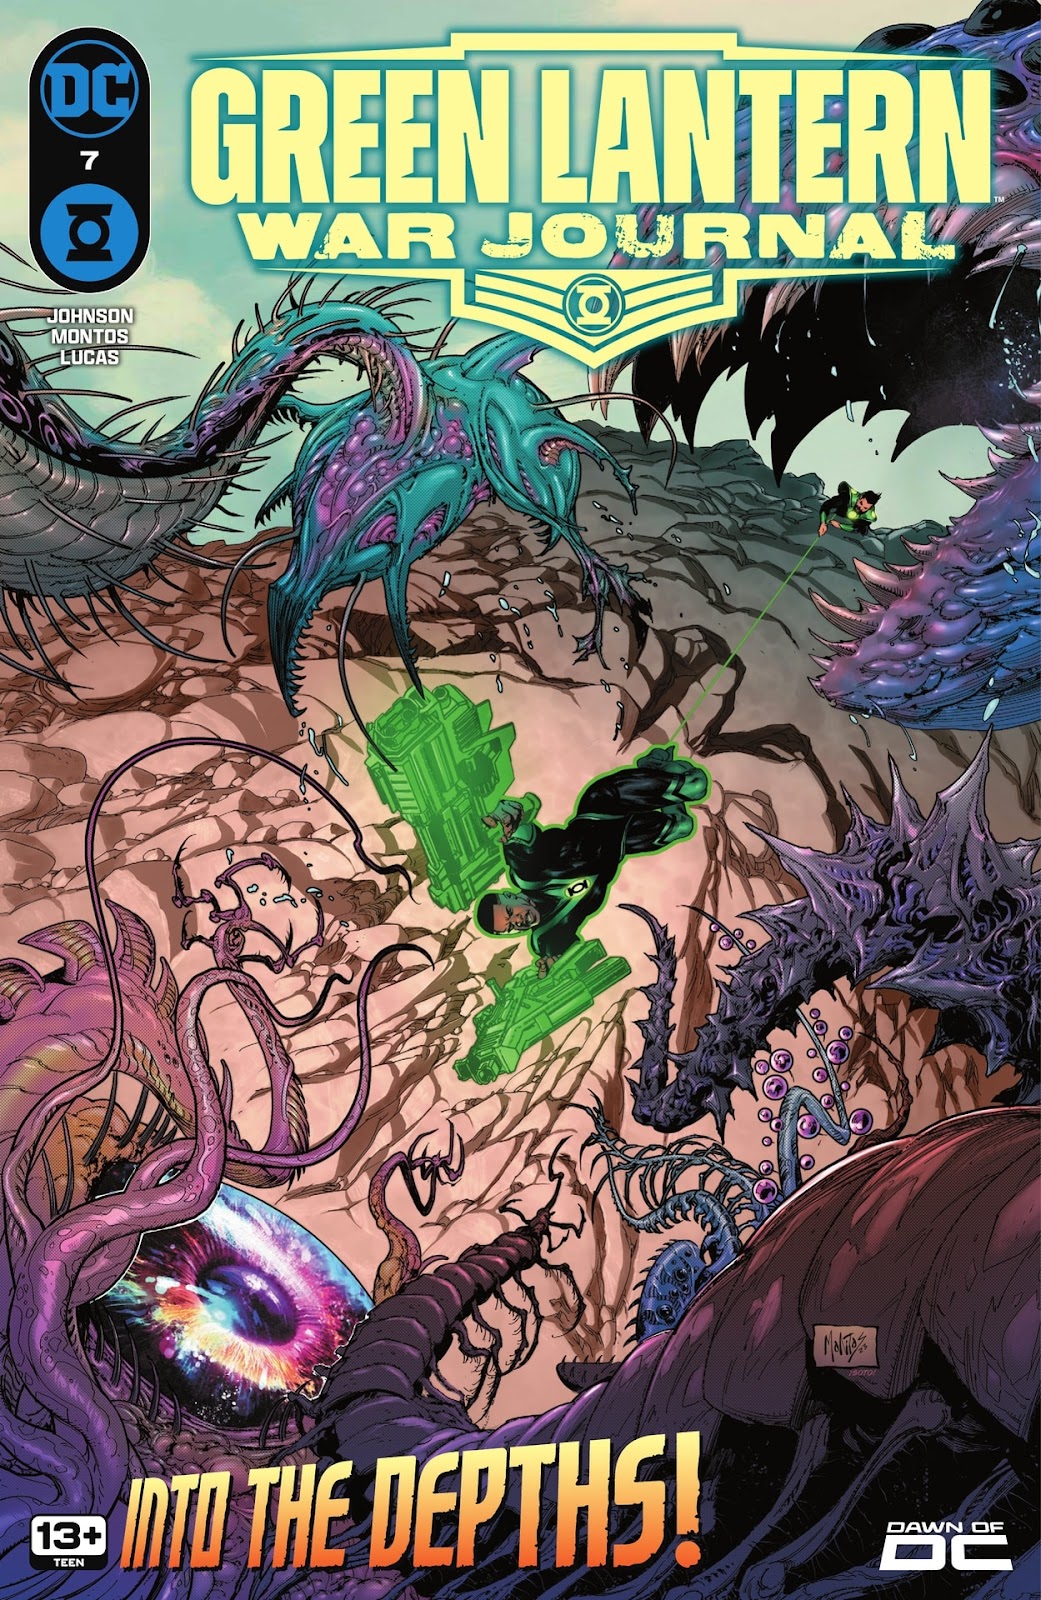 Green Lantern: War Journal issue 7 - Page 1